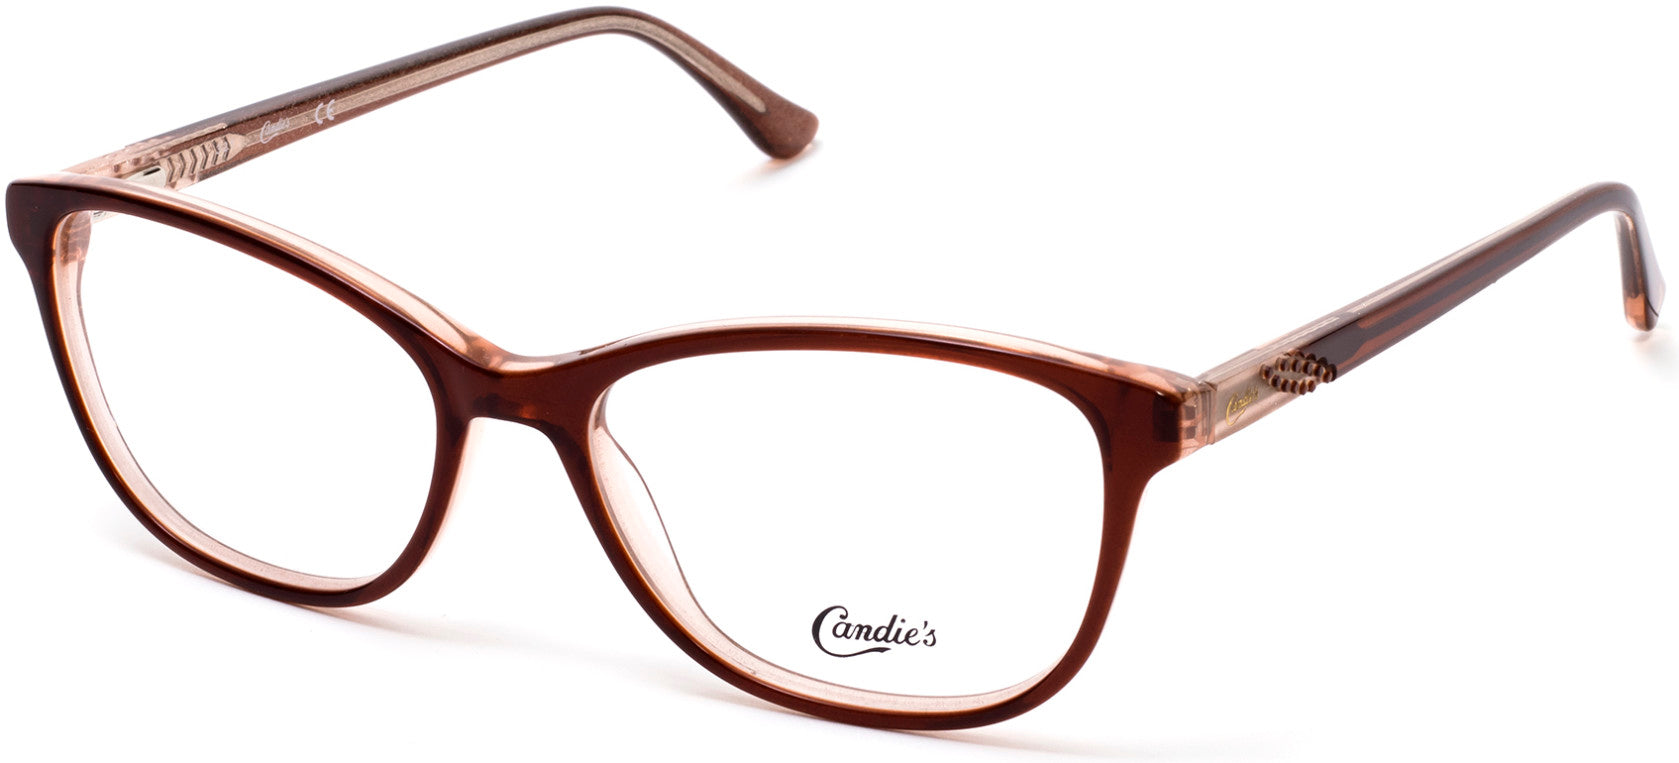 Candies CA0159 Geometric Eyeglasses 047-047 - Light Brown